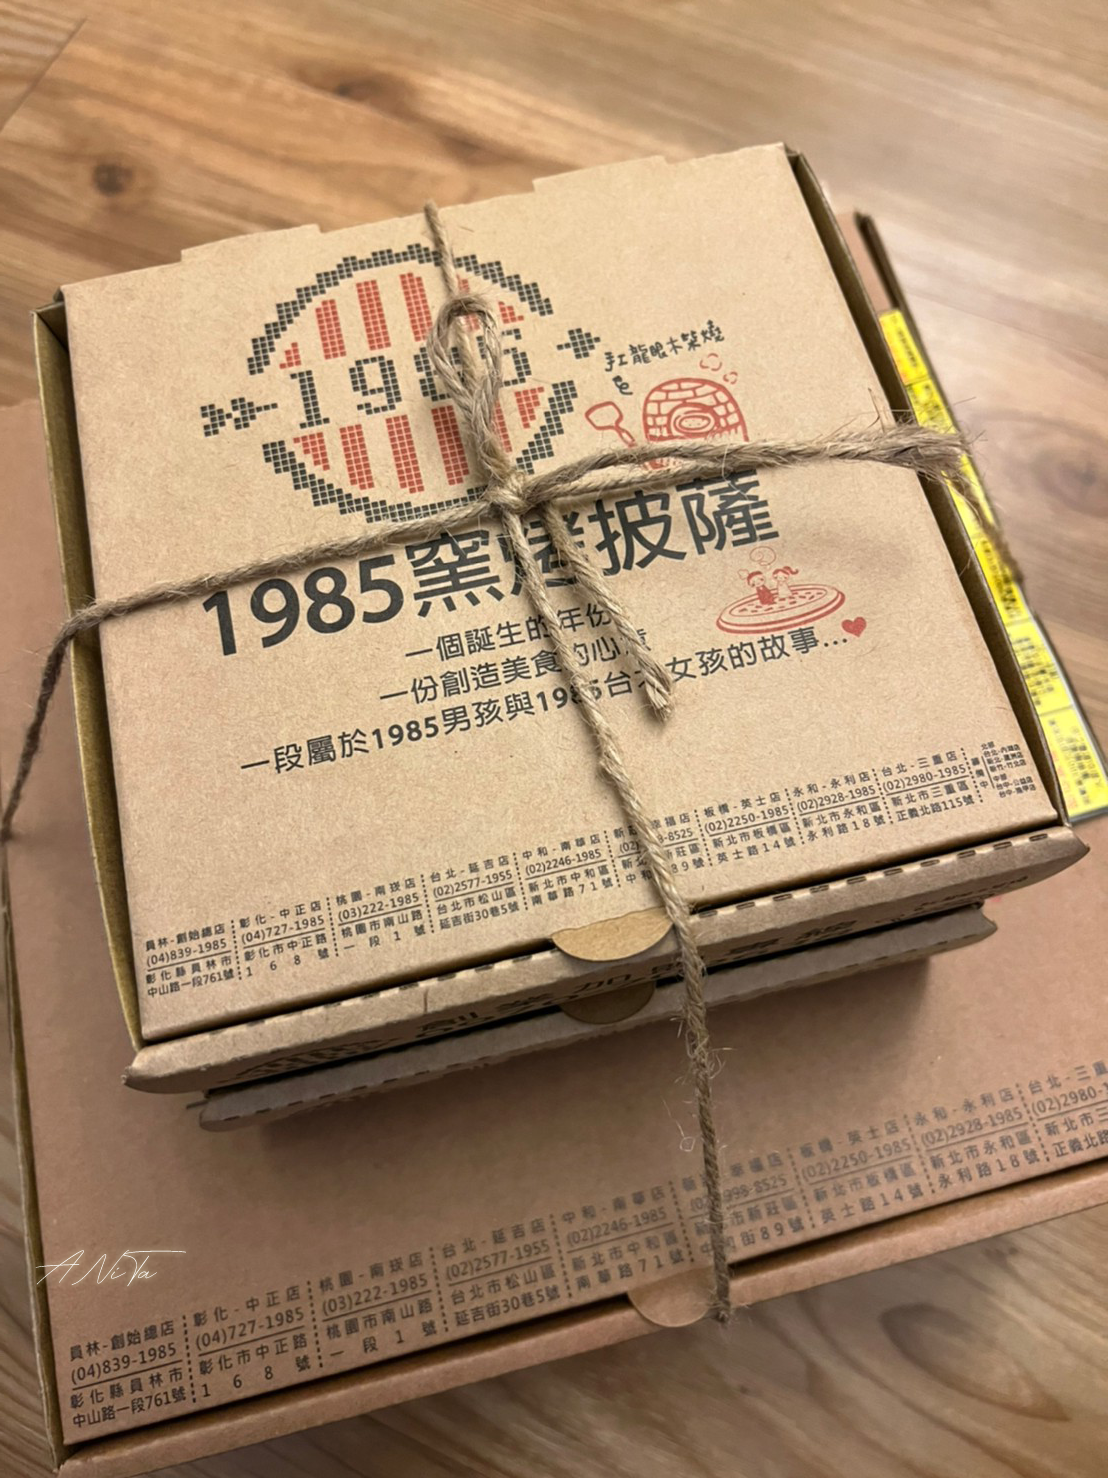 1985窯烤披薩,中和美食,南華路,台北美食,窯烤披薩,純手工